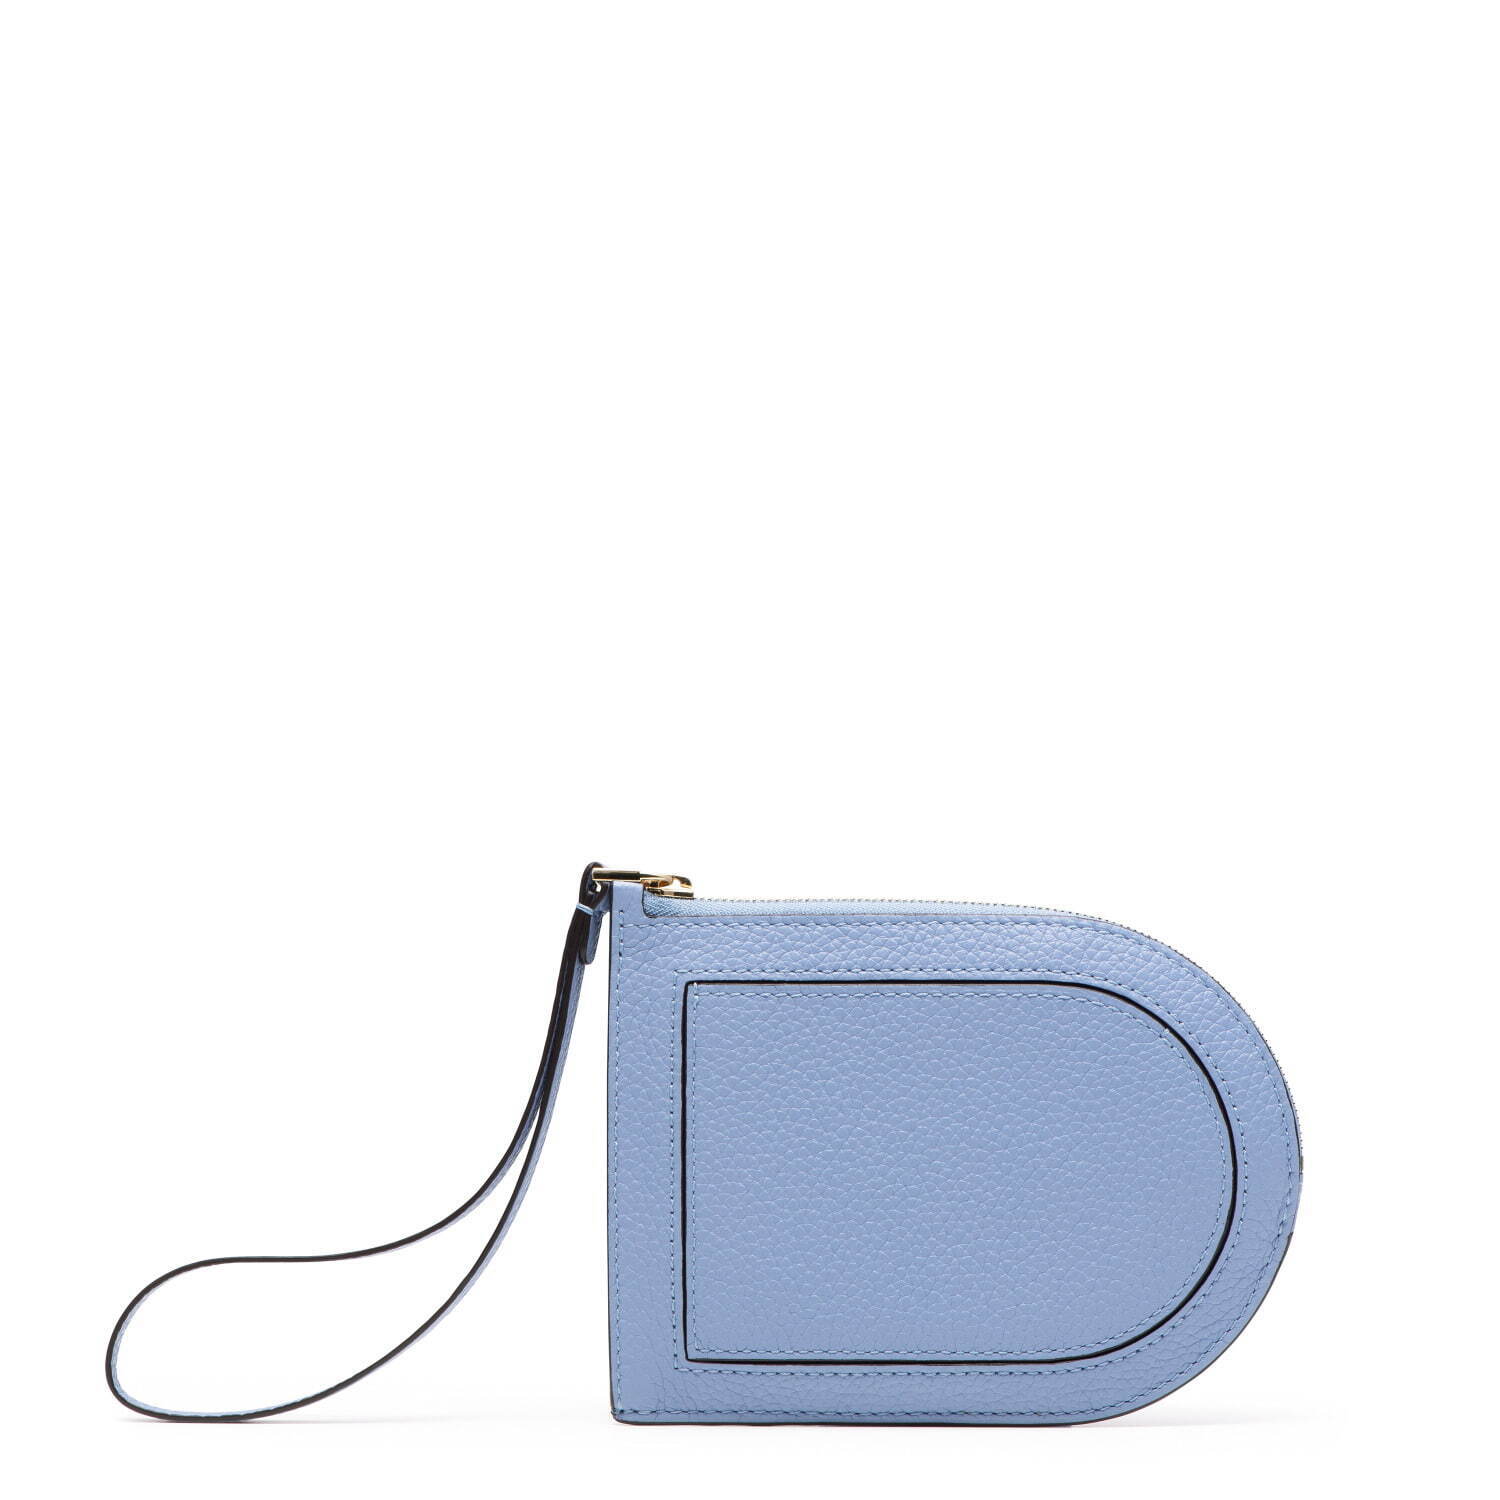 デルヴォーのレディース財布 - “D”型のストラップ付ラウンドジップ財布